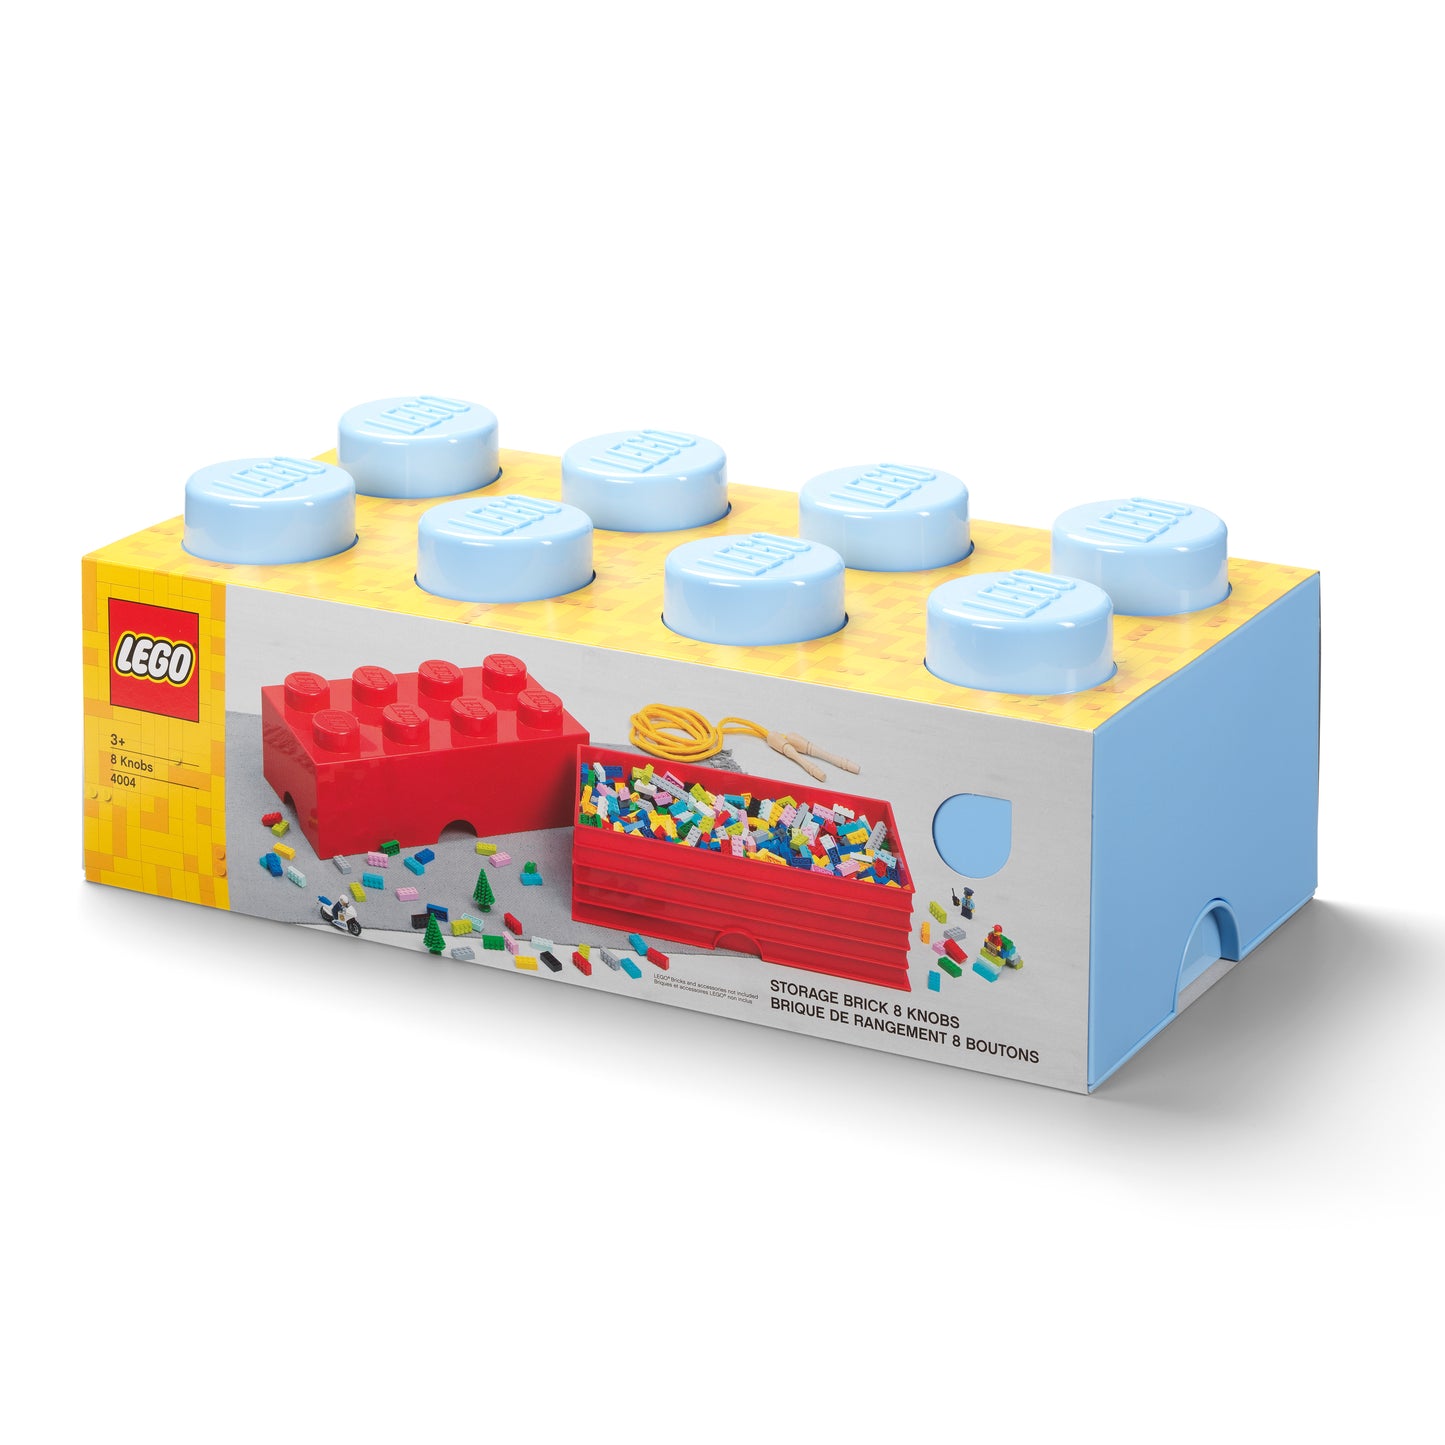 Contenedor Lego Brick 8